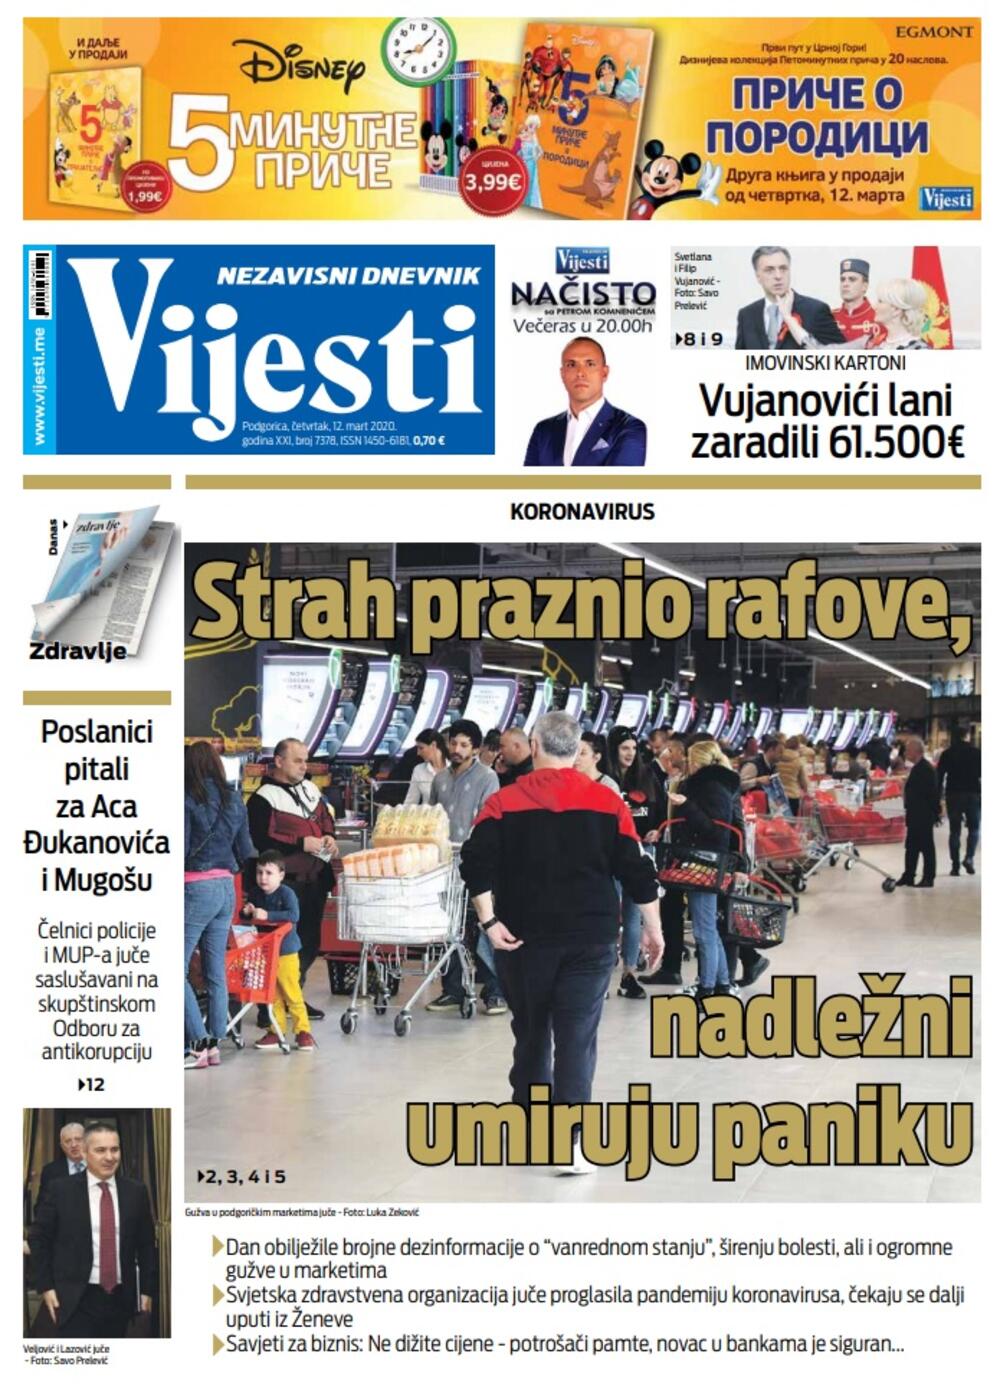 Naslovna strana "Vijesti" za četvrtak 12. mart 2020. godine